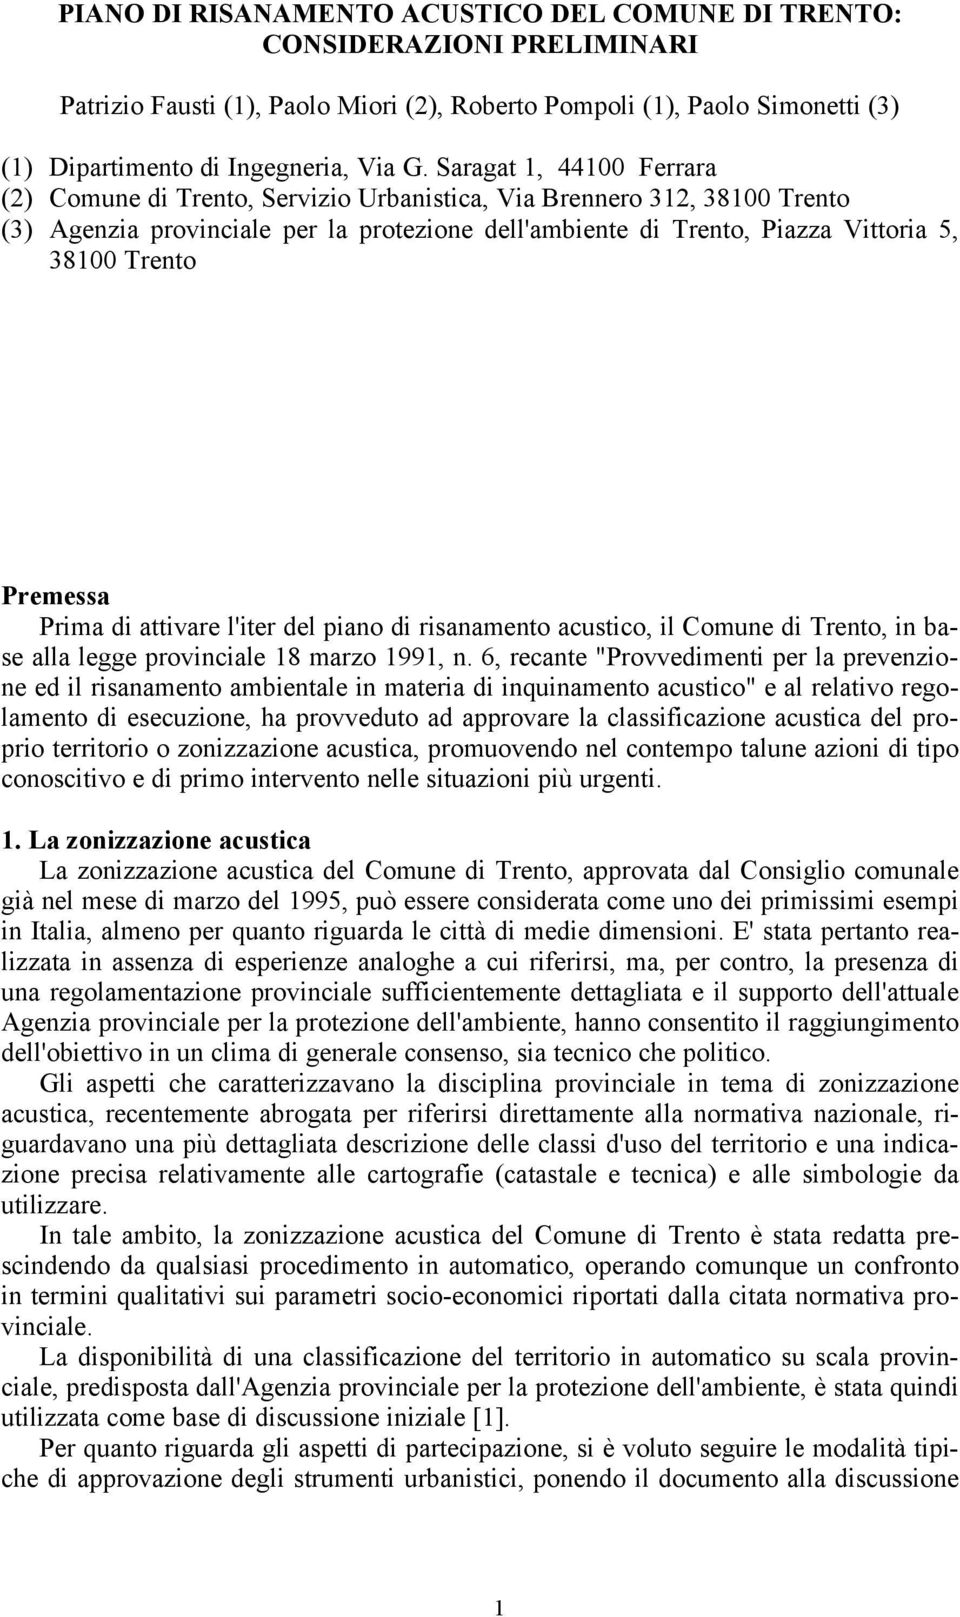 Premessa Prima di attivare l'iter del piano di risanamento acustico, il Comune di Trento, in base alla legge provinciale 18 marzo 1991, n.